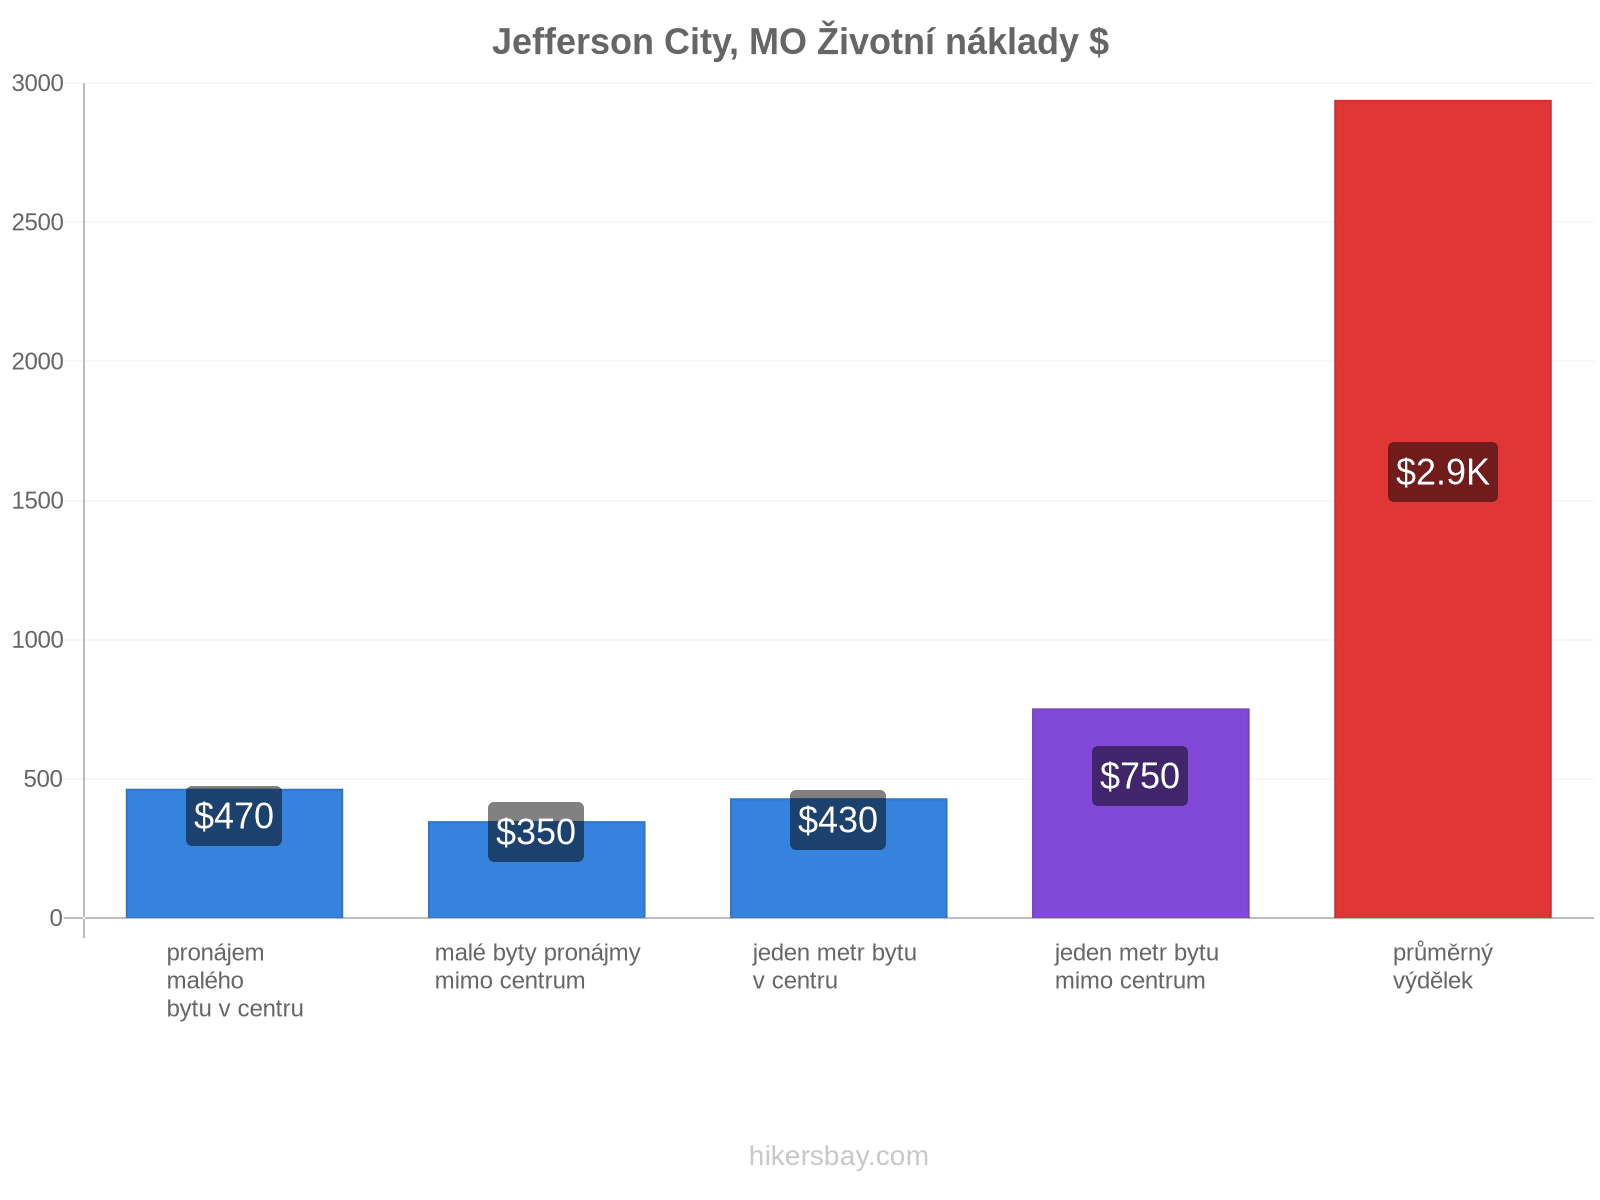 Jefferson City, MO životní náklady hikersbay.com